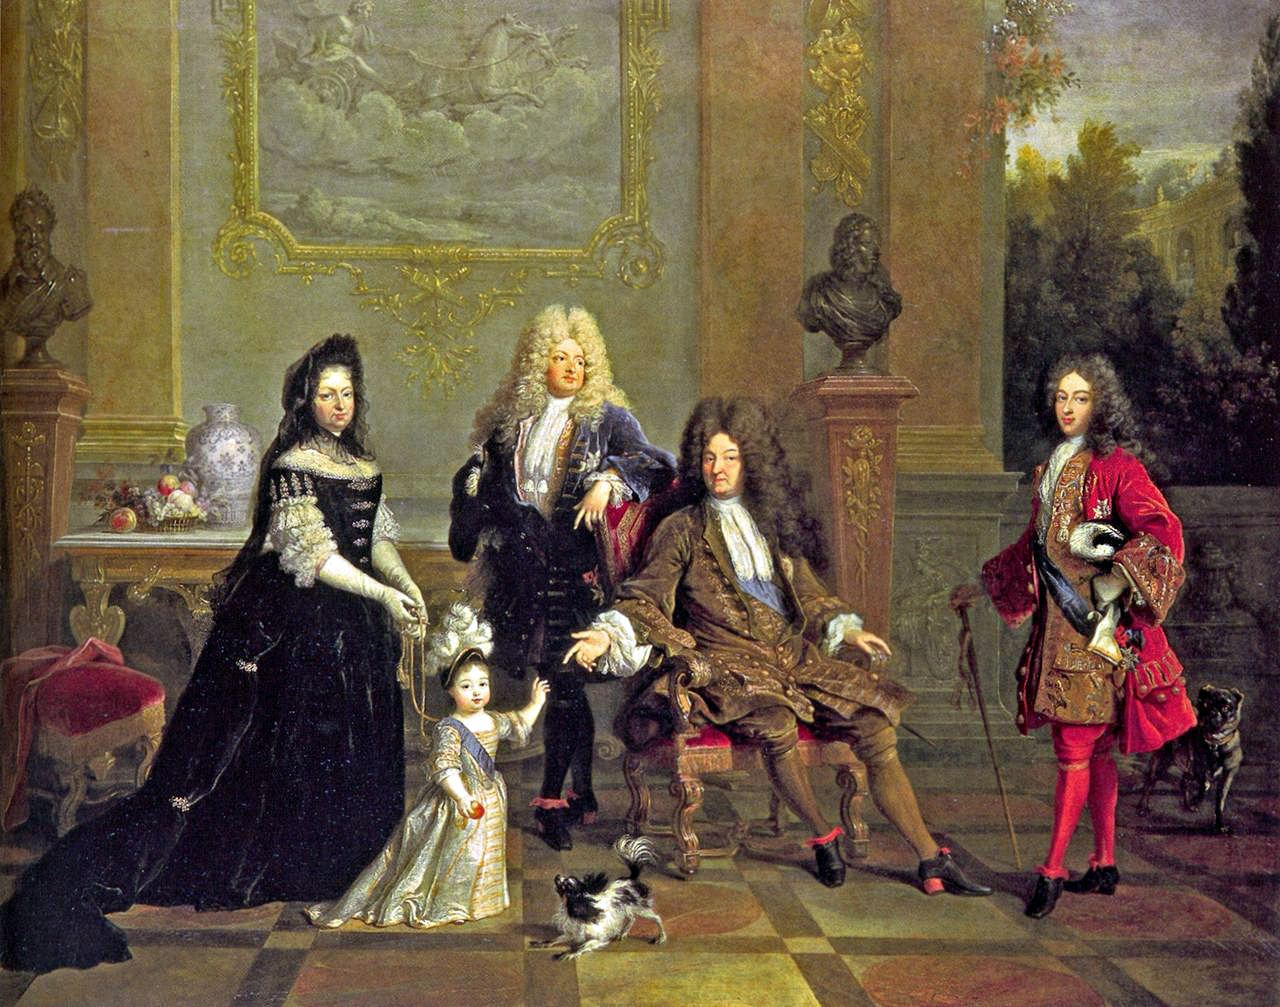 Luis XIV (sentado) con su hijo el Gran Delfín (izquierda), su nieto Luis, duque de Borgoña (derecha), su bisnieto Luis, duque de Anjou, y Madame de Ventadour, institutriz del duque de Anjou, que encargó este cuadro. Al fondo se ven bustos de Enrique IV y de Luis XIII (c. 1710).